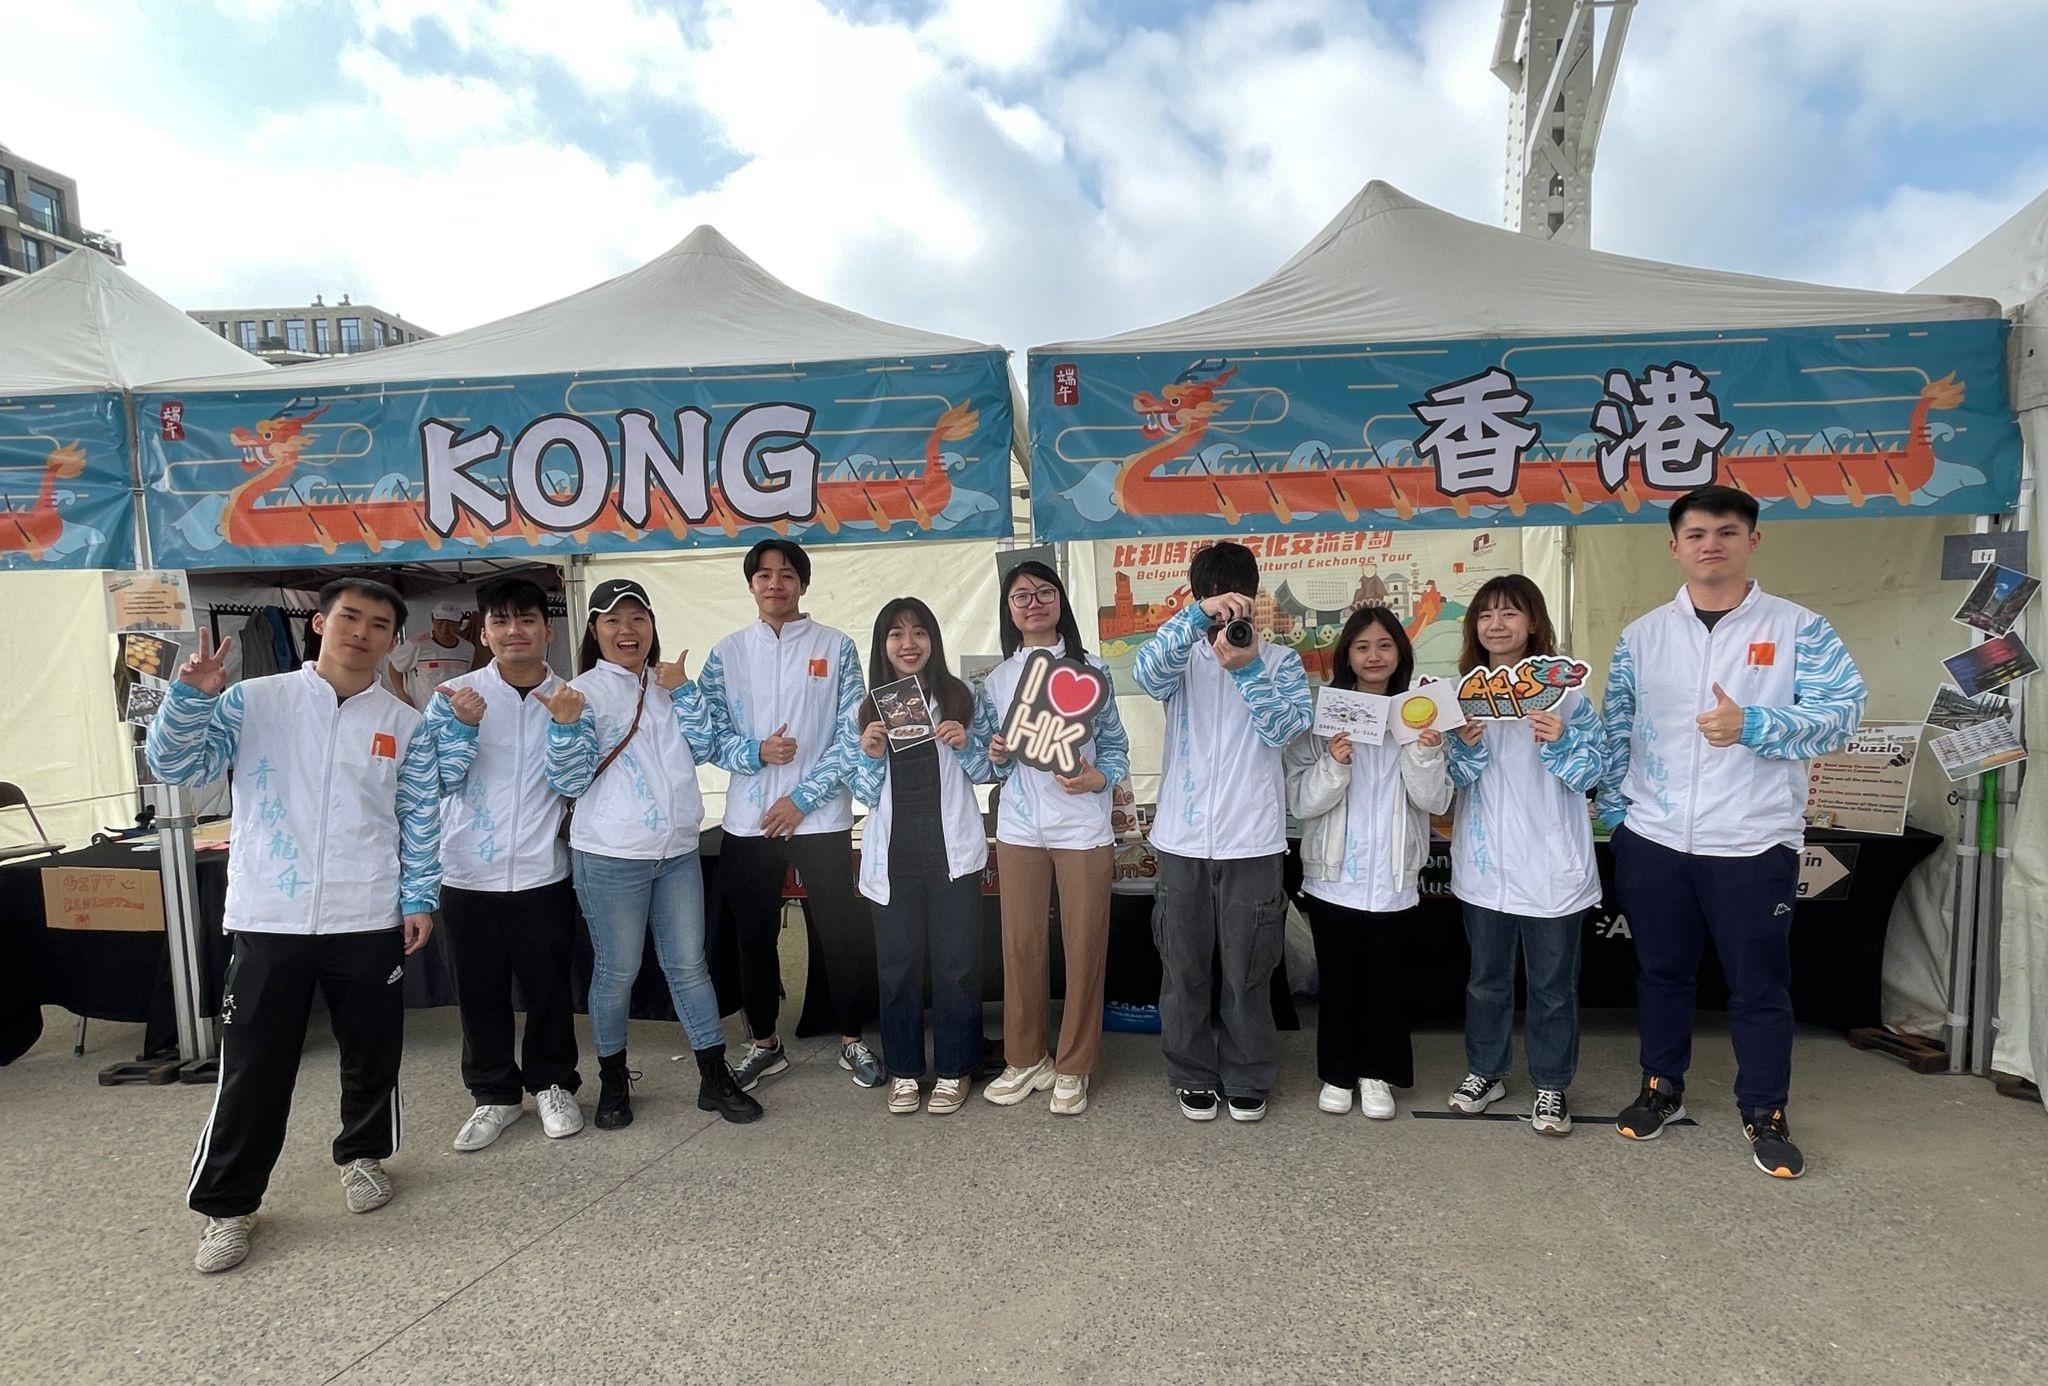 香港青年协会队伍六月八日（安特卫普时间）于比利时安特卫普的香港龙舟节中担当大使，向来访香港展位的访客介绍香港。